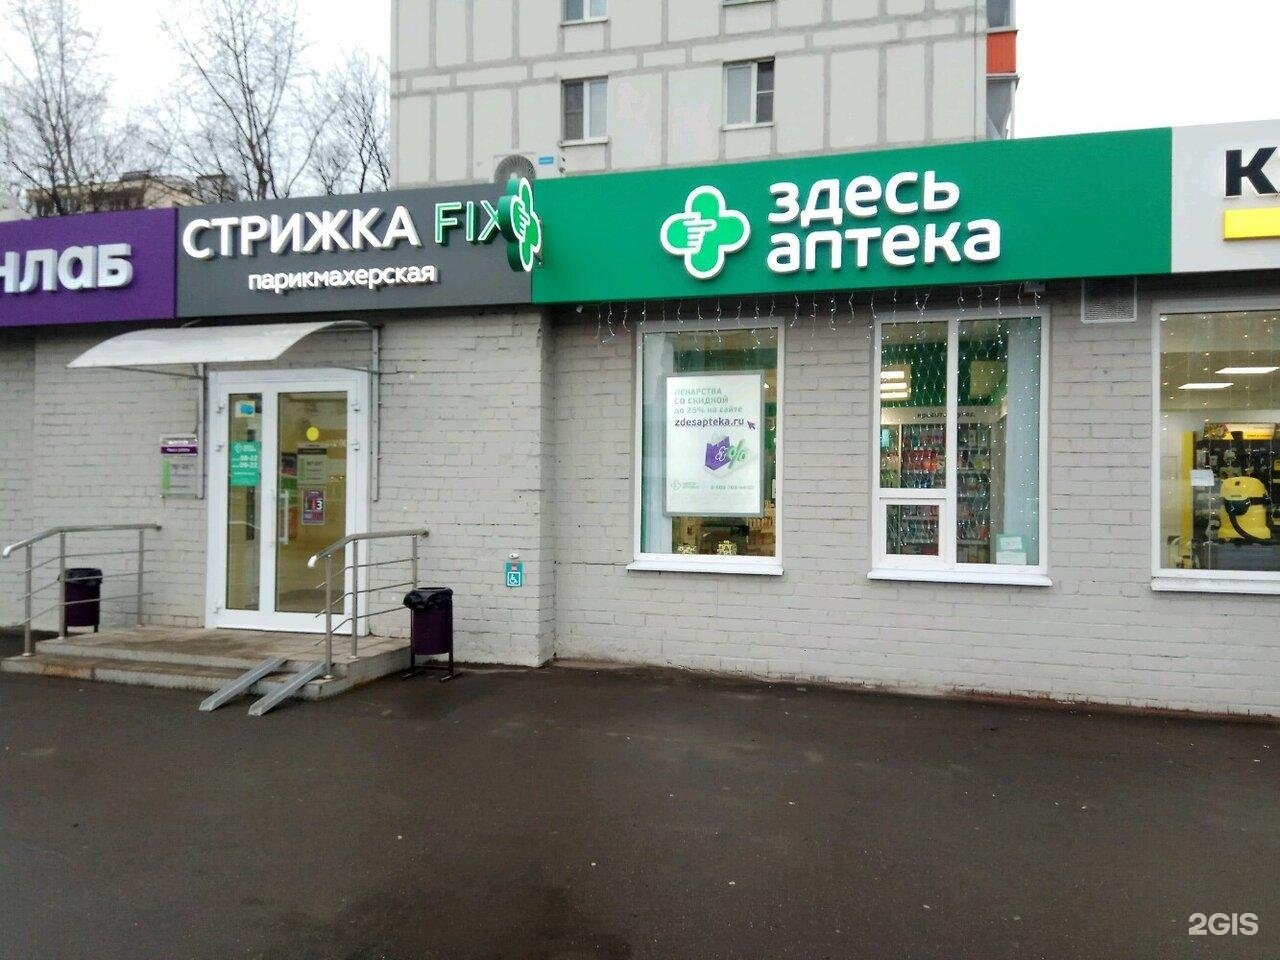 Щелковское шоссе 74 аптека